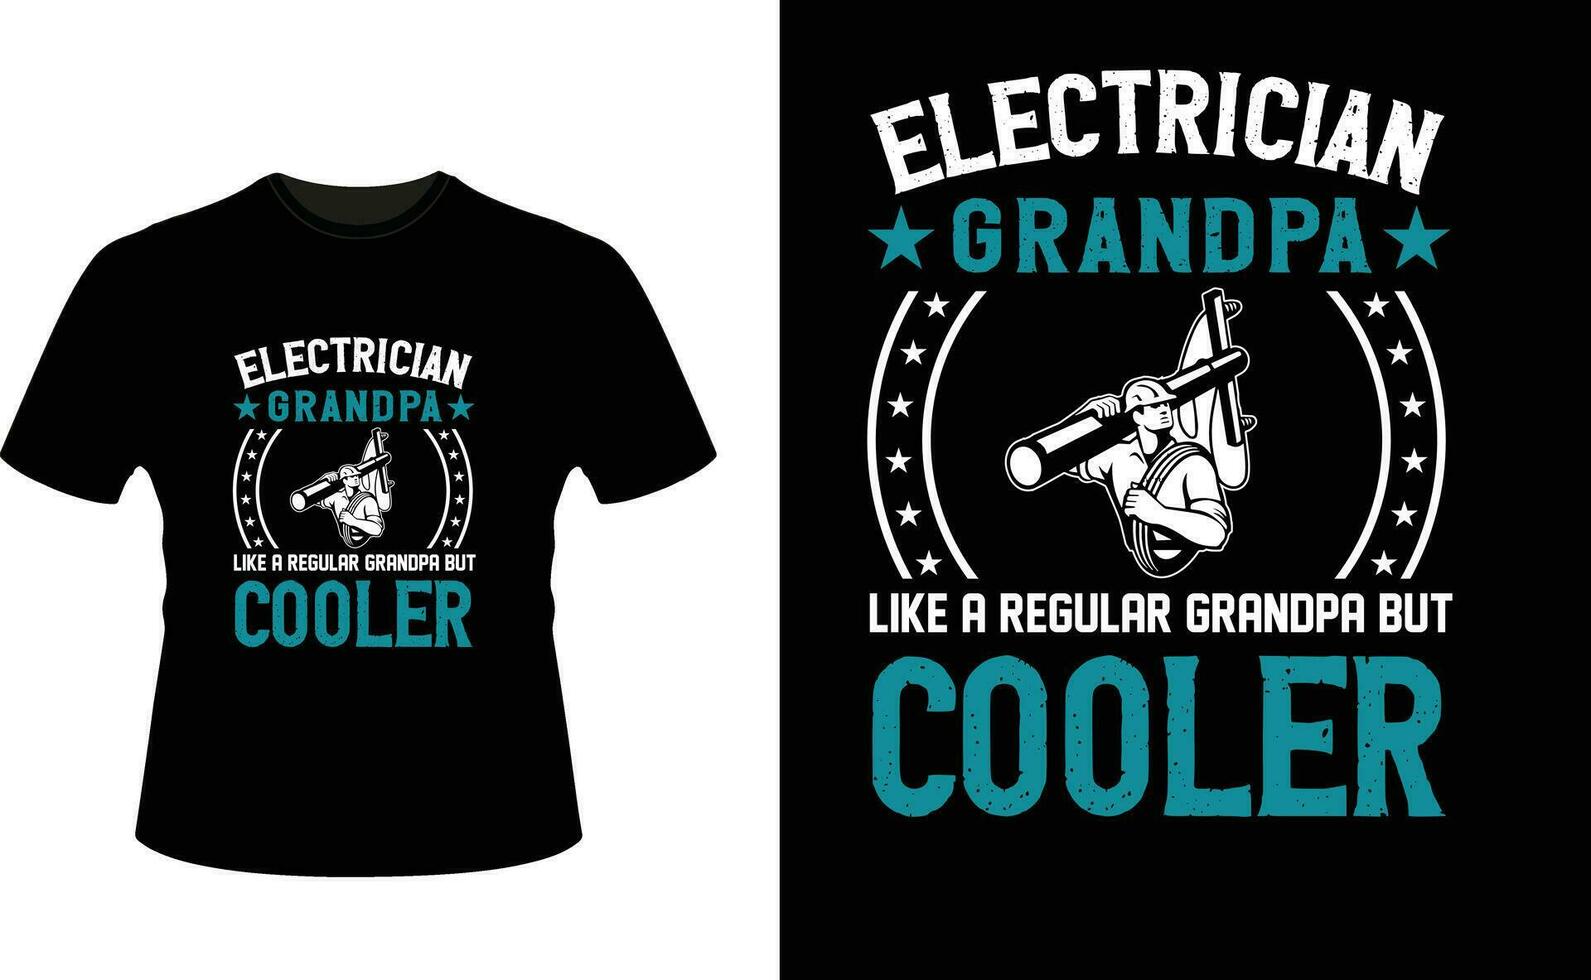 électricien grand-père comme une ordinaire grand-père mais glacière ou grand-père T-shirt conception ou grand-père journée t chemise conception vecteur